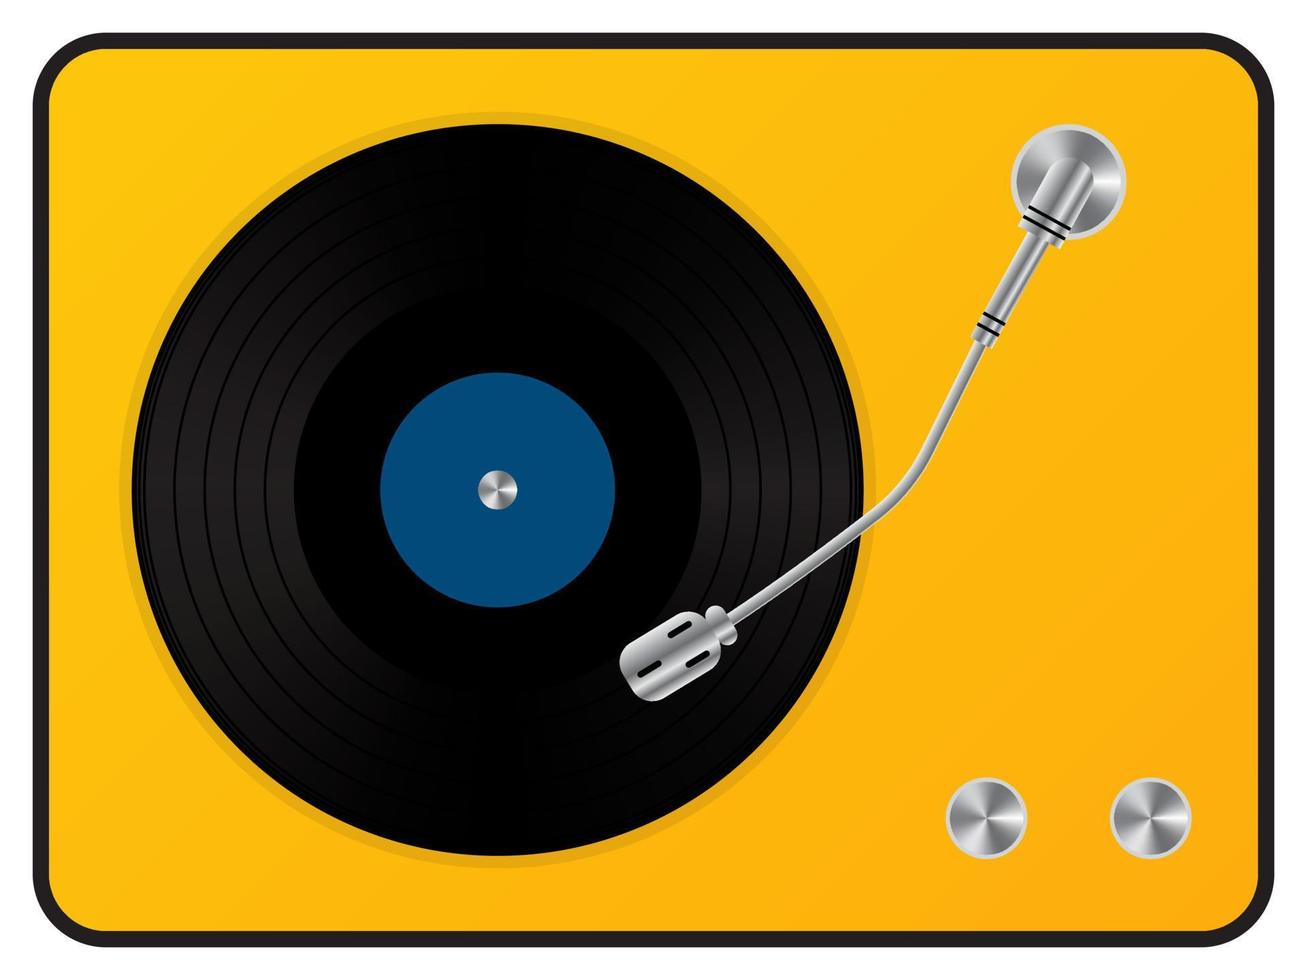 plataforma giratória de música retrô para discos de vinil. reprodutor de som de gramofone vintage com disco de áudio preto com etiqueta turquesa. vector ilustração 3d realista em fundo amarelo